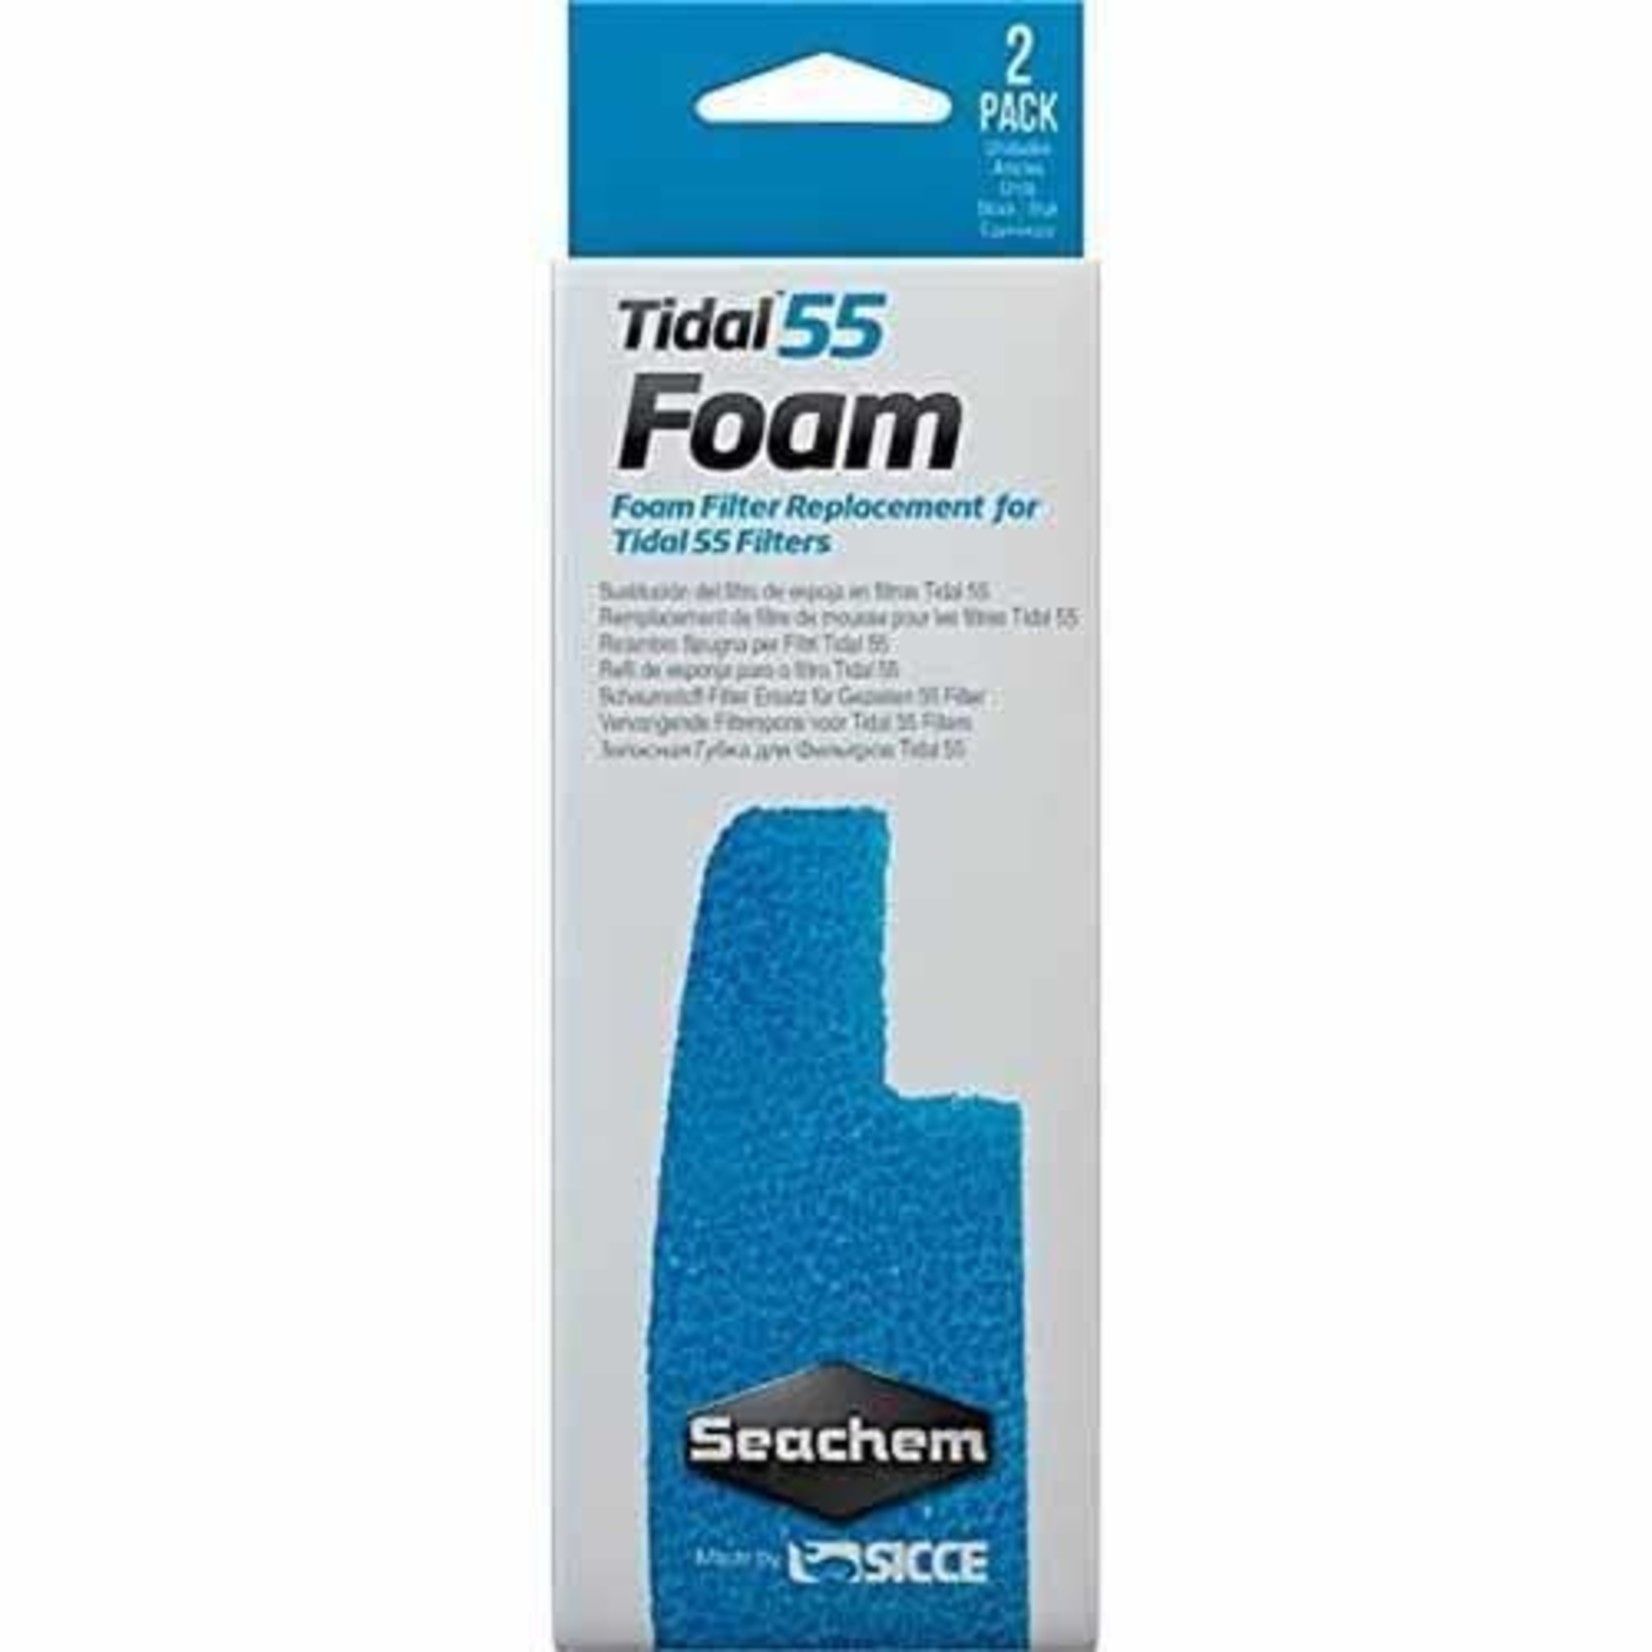 Seachem Seachem Tidal 55 Foam Filter Sponges for Tidal 55 External Filter - 2 pack